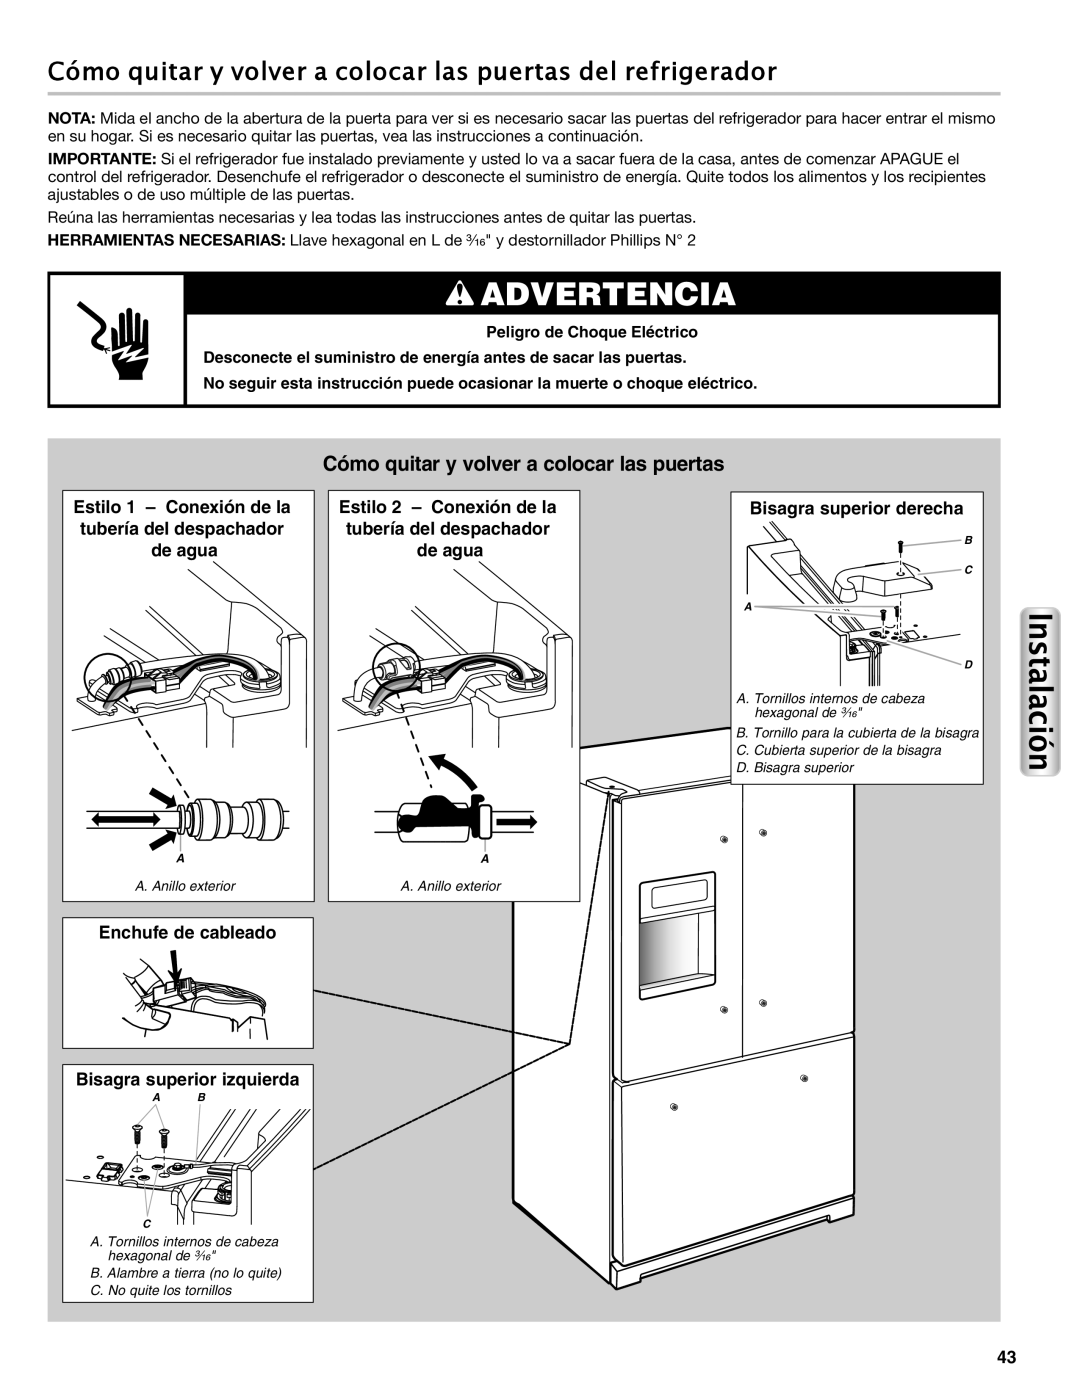 Maytag W10558104A manual Cómo quitar y volver a colocar las puertas del refrigerador, Estilo 1 - Conexión de la, de agua 